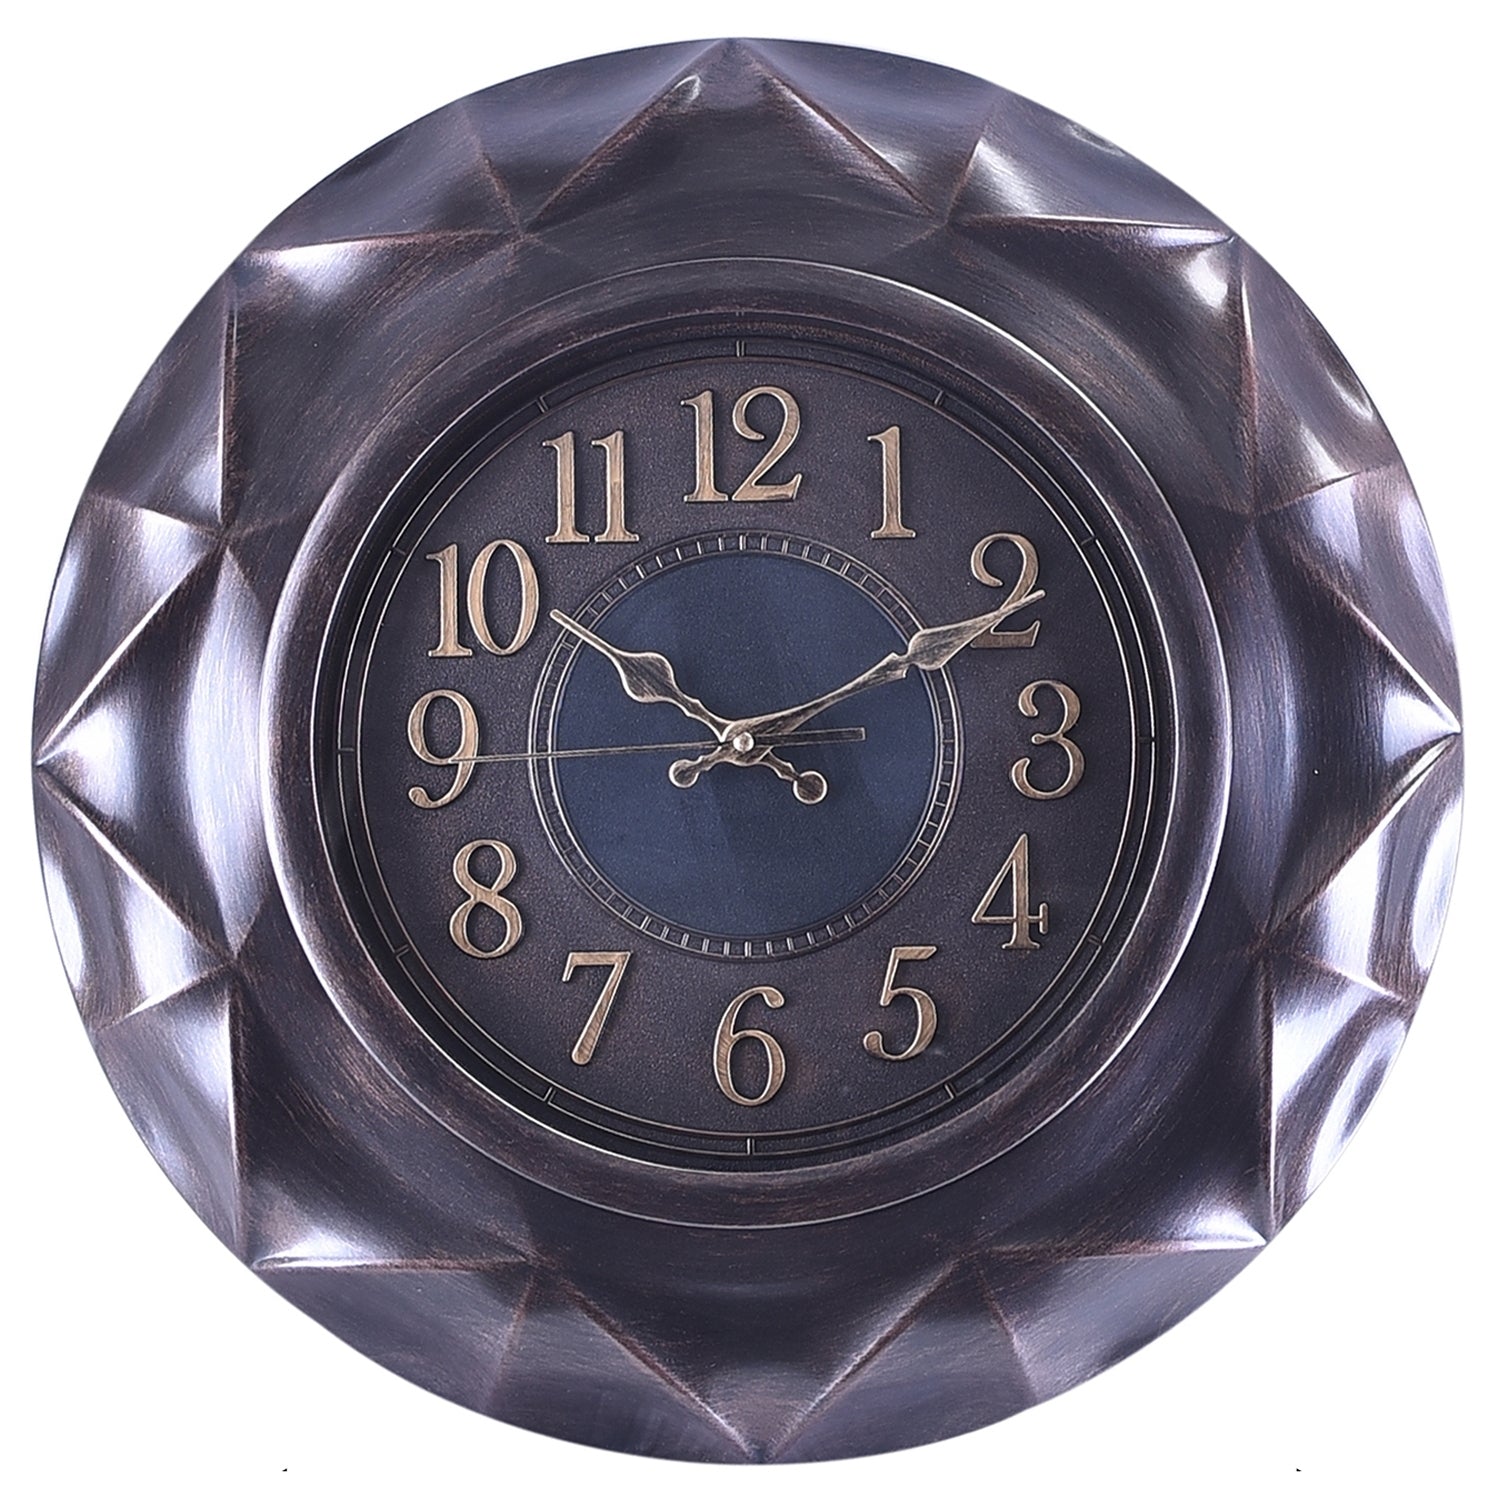 Premium Antique Design Analog Wall Clock